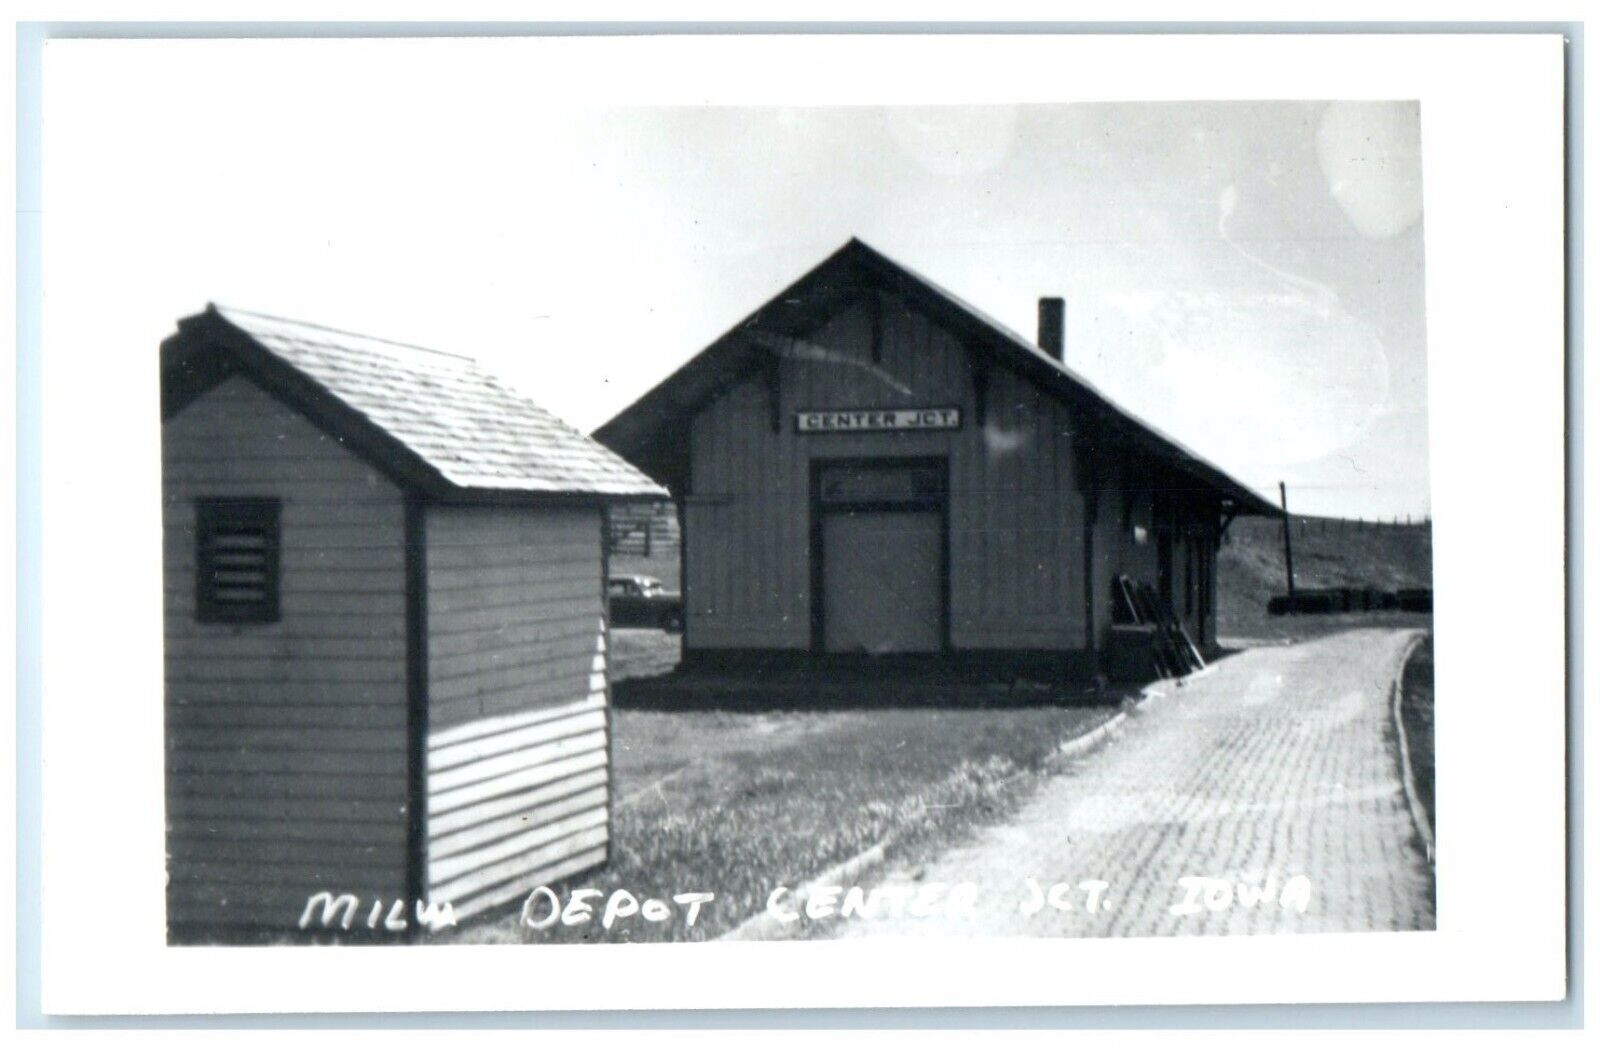 1970 MILW Depot Center JCT Iowa Railroad Train Depot Station RPPC Photo Postcard